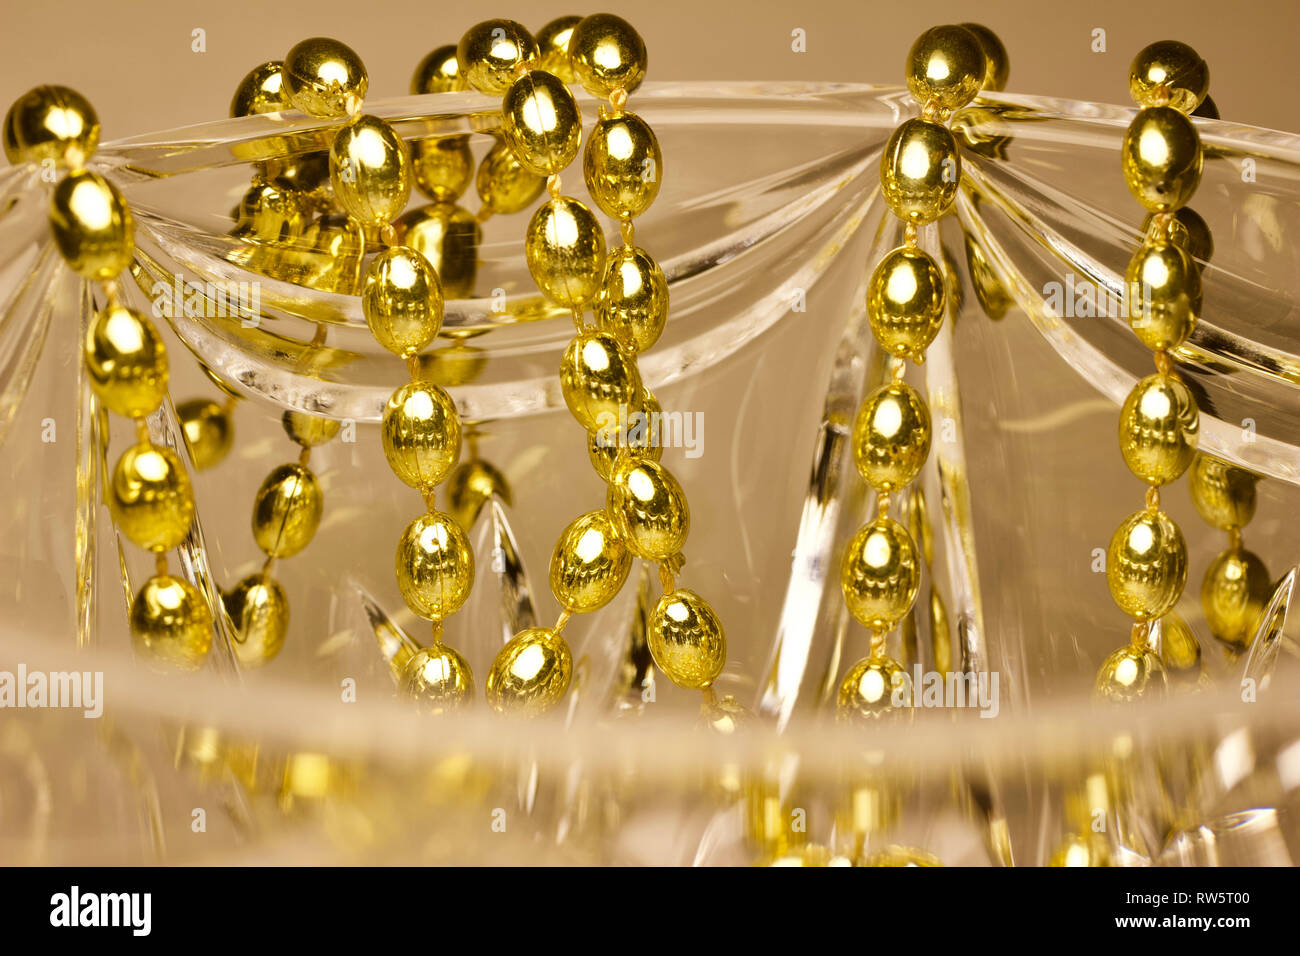 Résumé de macro couleur or perles Mardi Gras drapé sur beau verre en cristal de plomb Banque D'Images